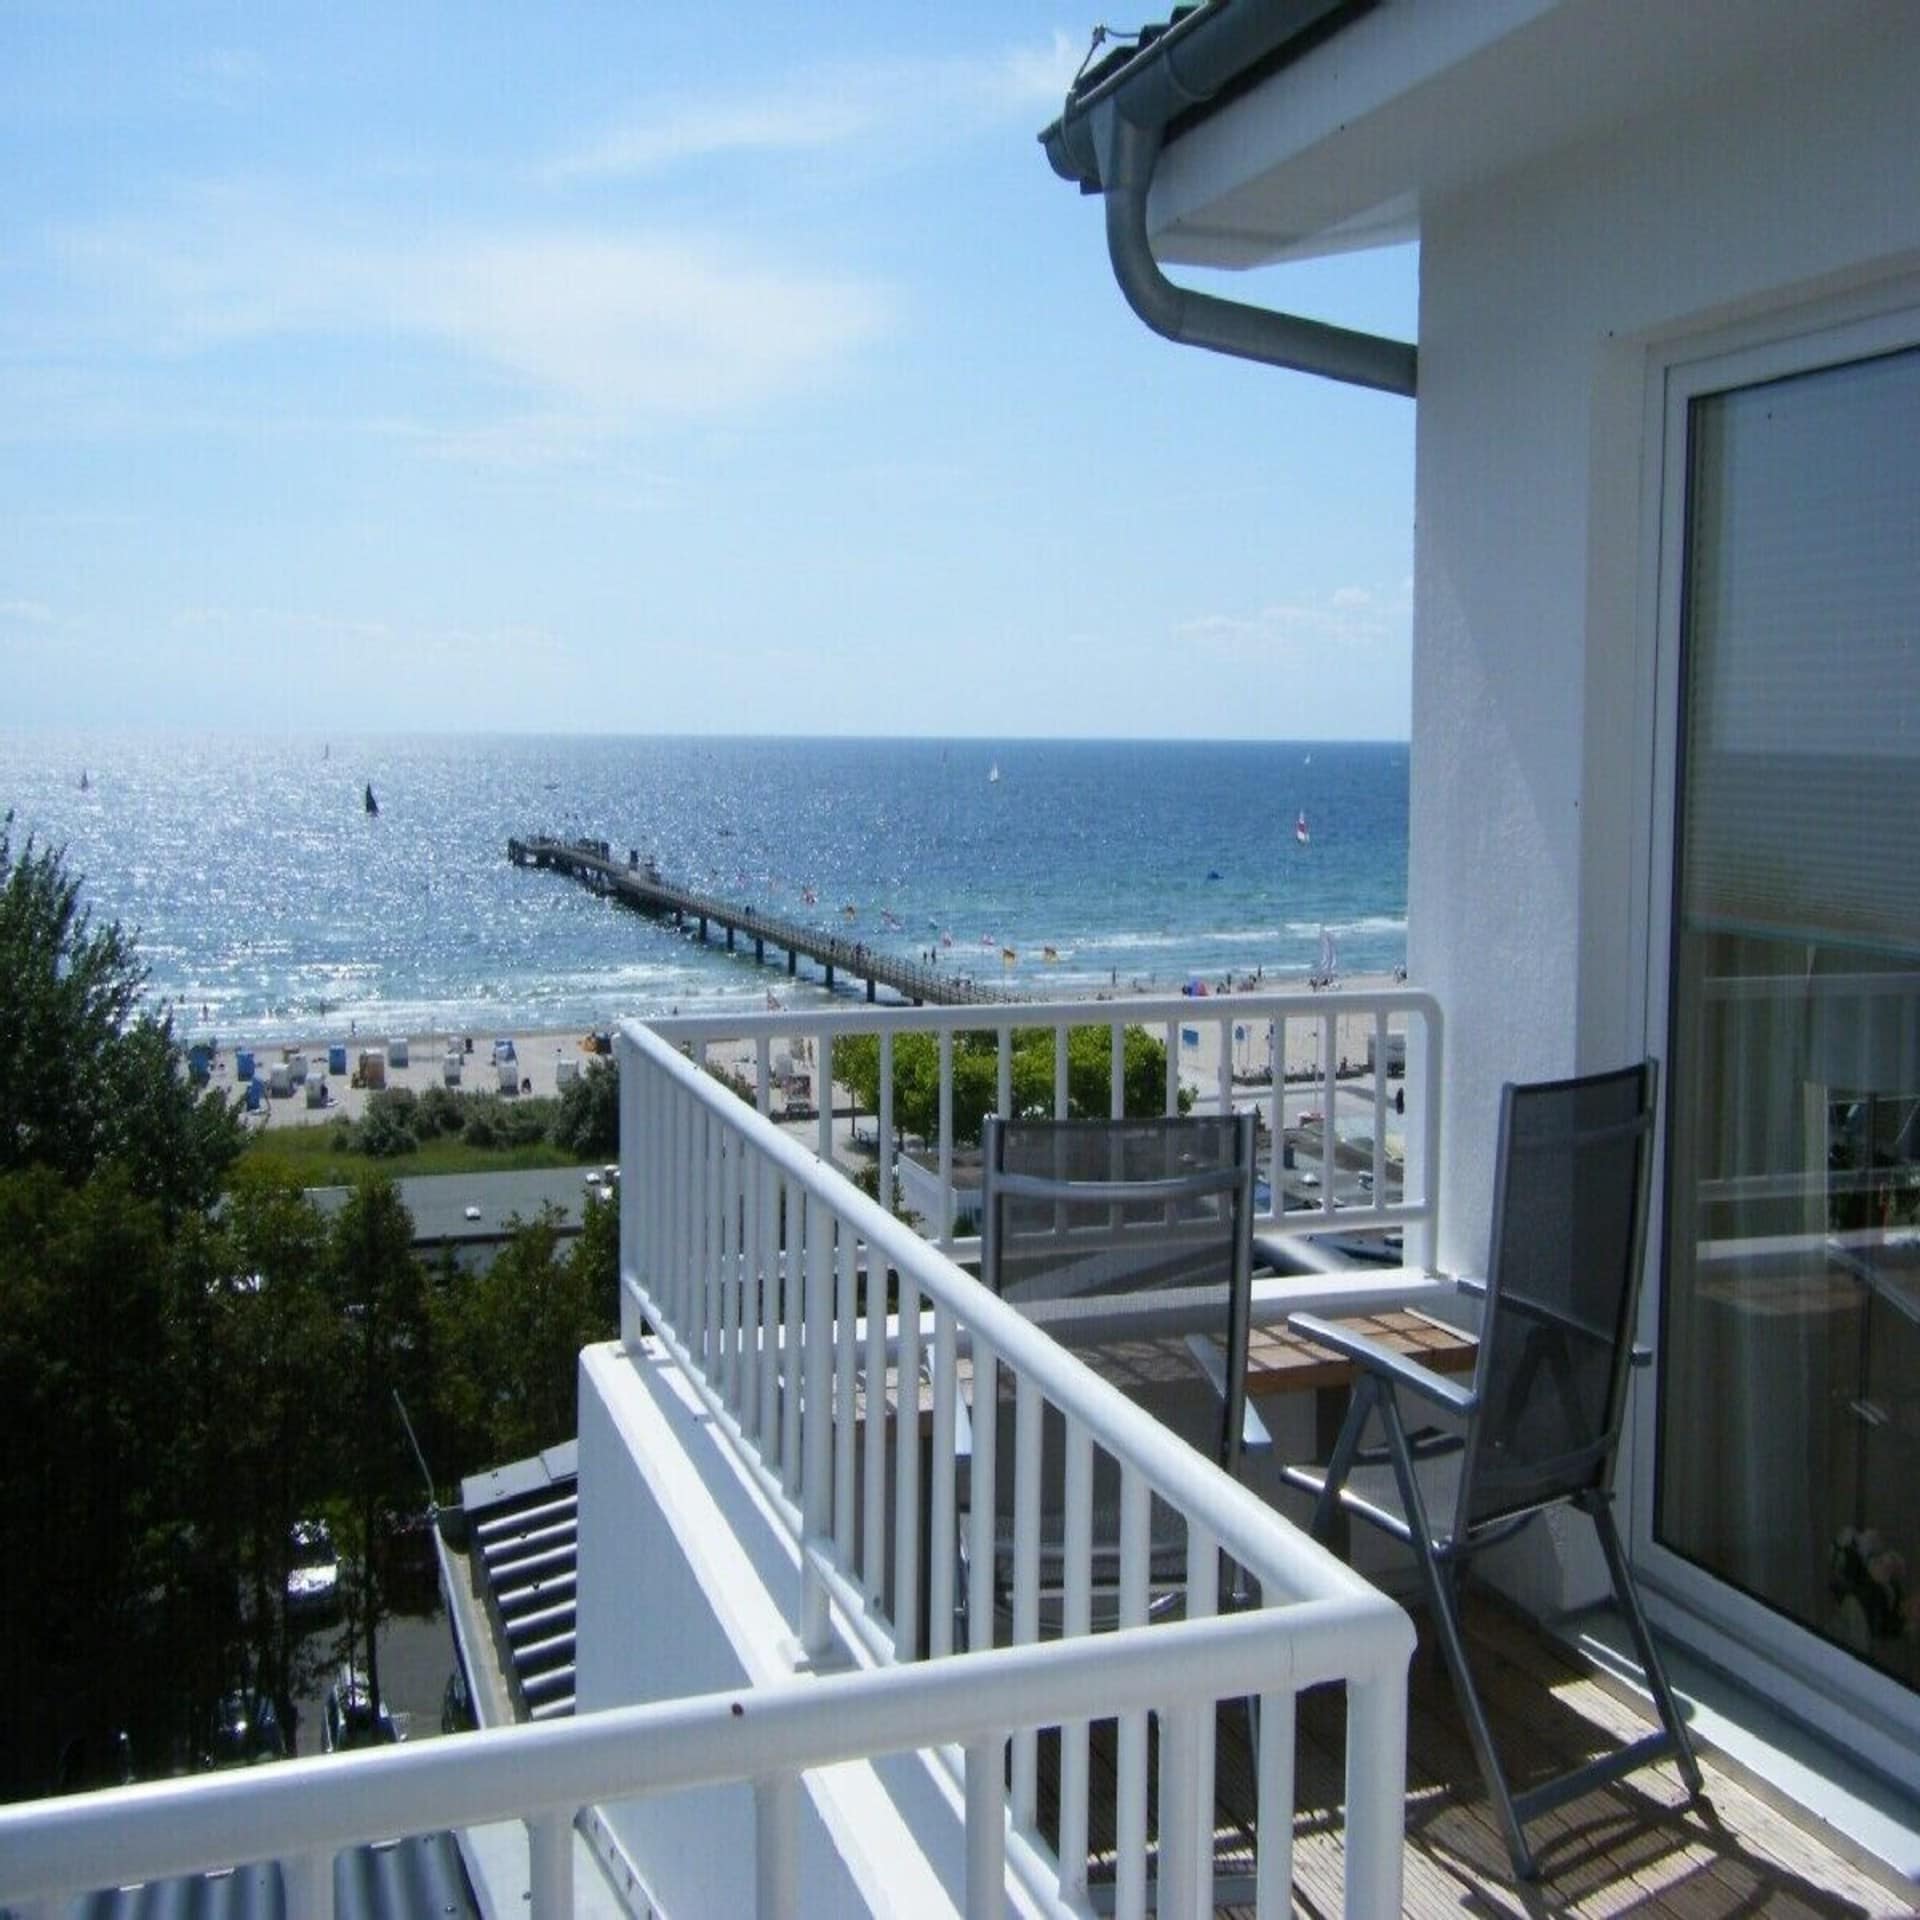 Balkon mit weißem Geländer und 2 Stühlen sowie Blick auf den Strand und die Ostsee.